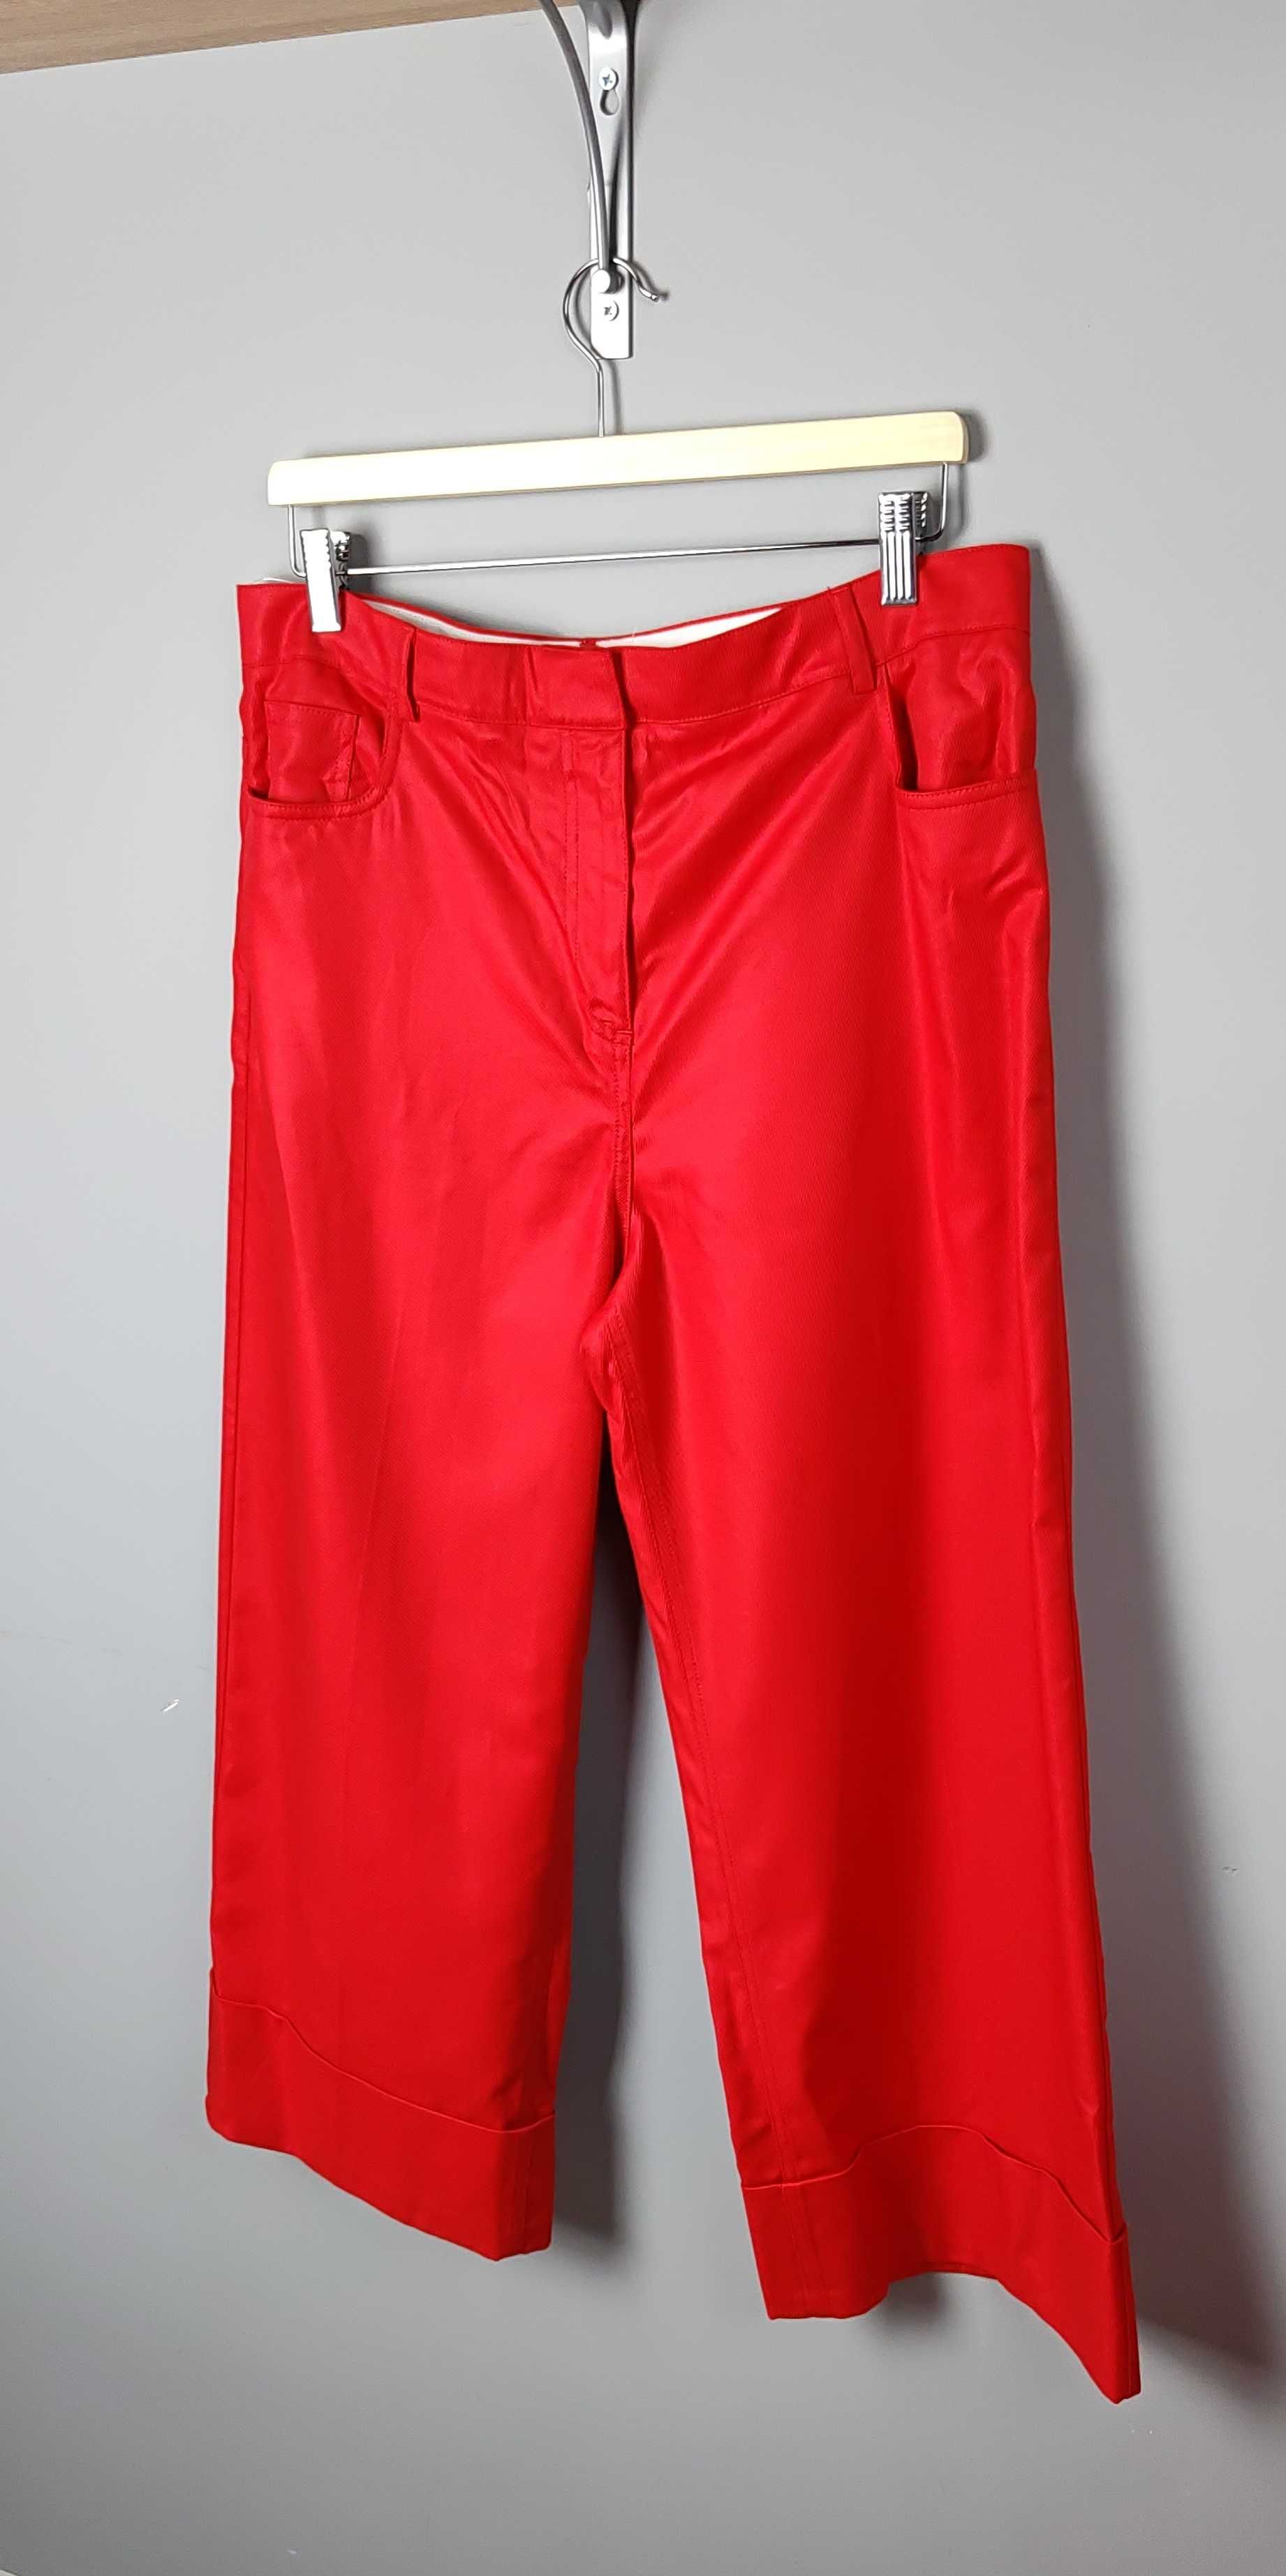 Spodnie czerwone do kostek szerokie nogawki wysoki stan nowe Reiss 42